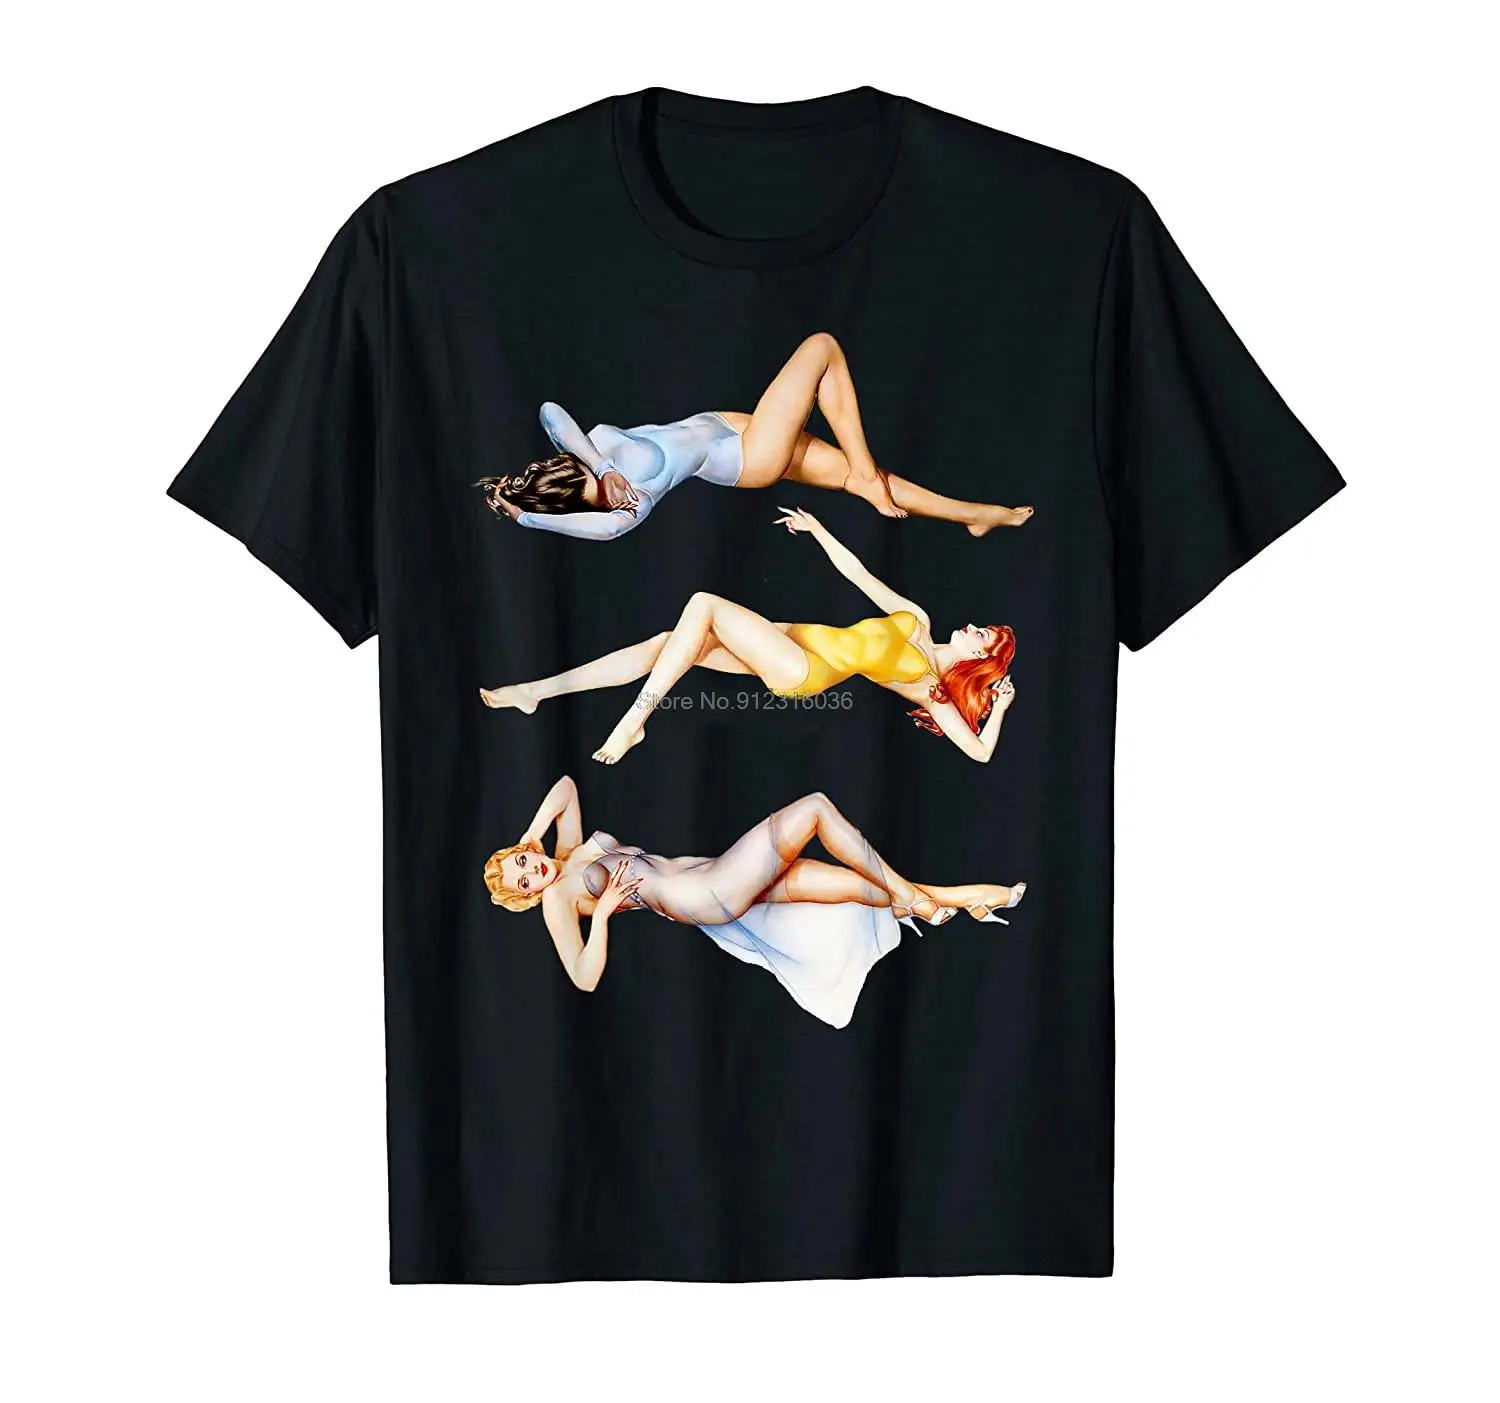 America Vintage Hot Pin Up Girl Medley-Sexy Pinup Girl Art T-Shirt Men Cotton Tshirt Hip Hop Tees Tops Harajuku Streetwear